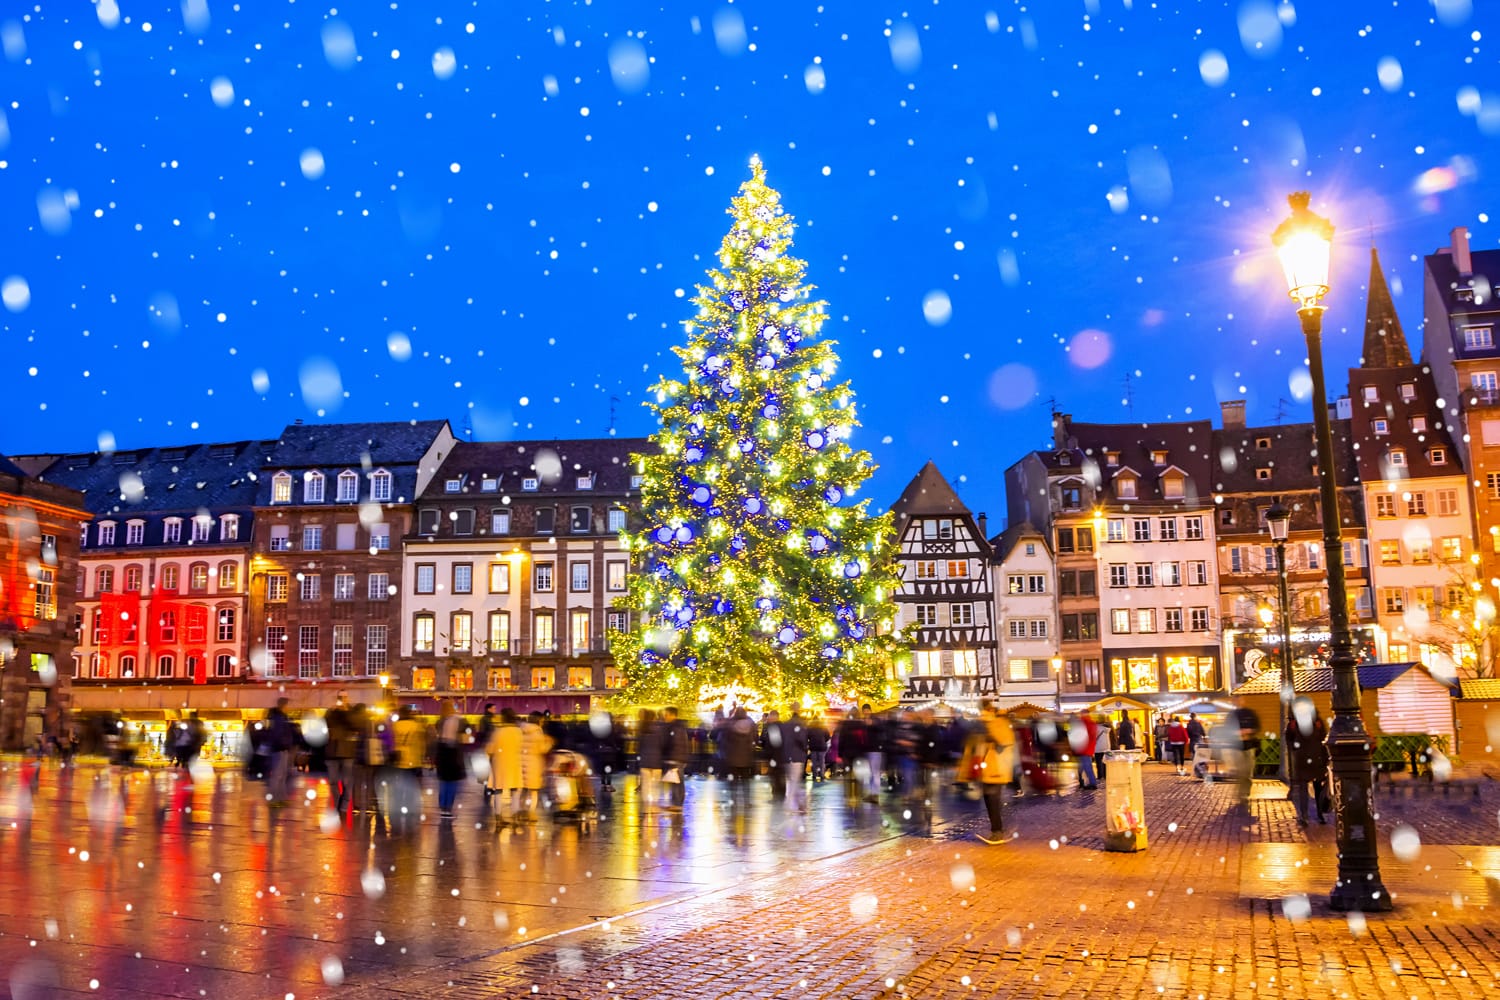 Albero di Natale e mercatino di Natale in Piazza Kleber di notte nella città medievale di Strasburgo - capitale di Noel, Alsazia, Francia.